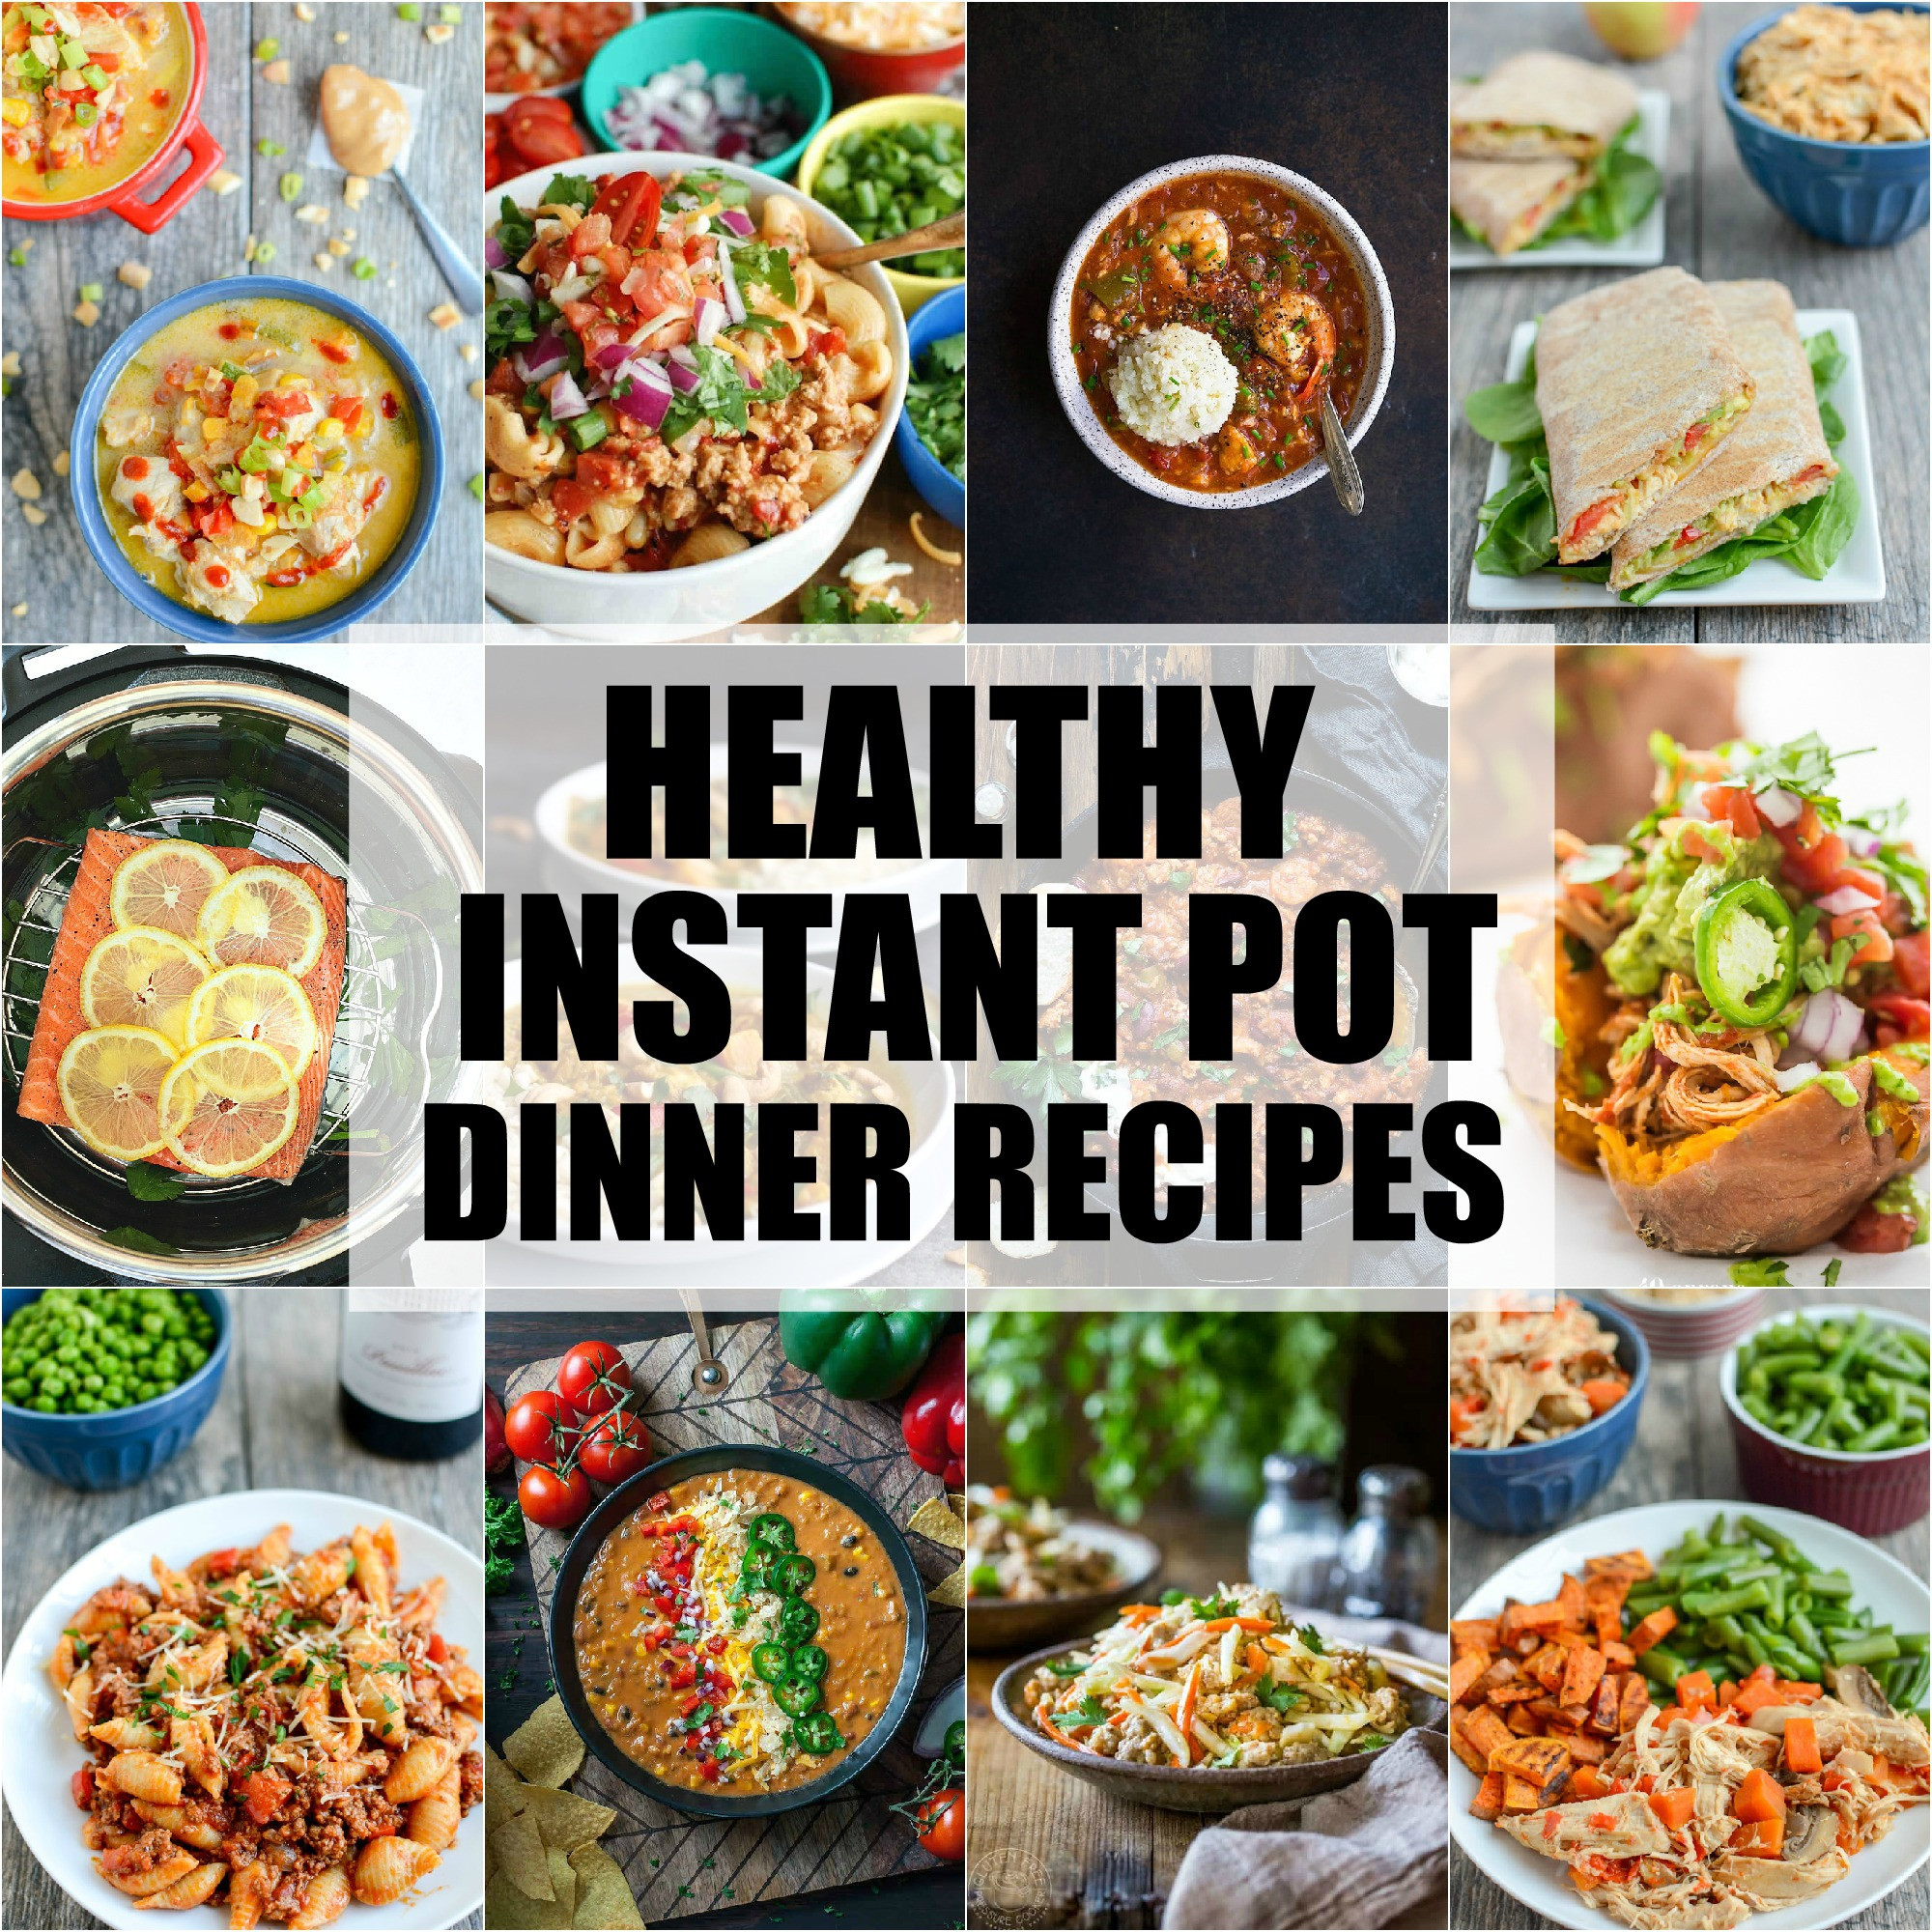 Healthy Instant Pot Recipes
 Healthy Instant Pot Dinner Recipes